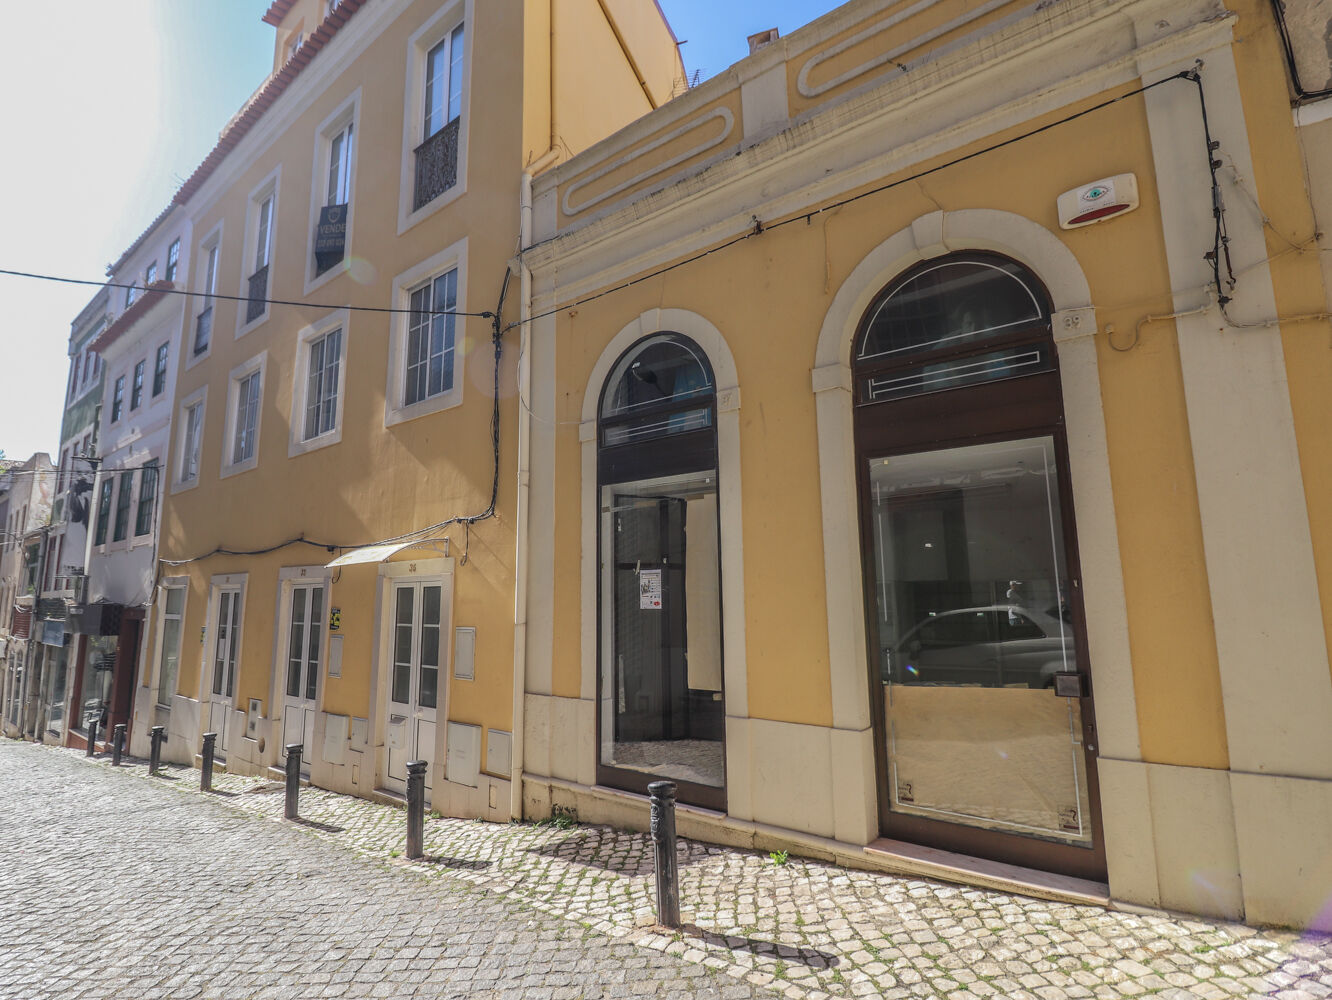 Prédio / Hostel - Edifício com 4 pisos destinado a alojamento local, comércio e restauração, situado na zona histórica da cidade da Figueira da Foz e próximo do Campus Figueira da Foz - Universidade de Coimbra.